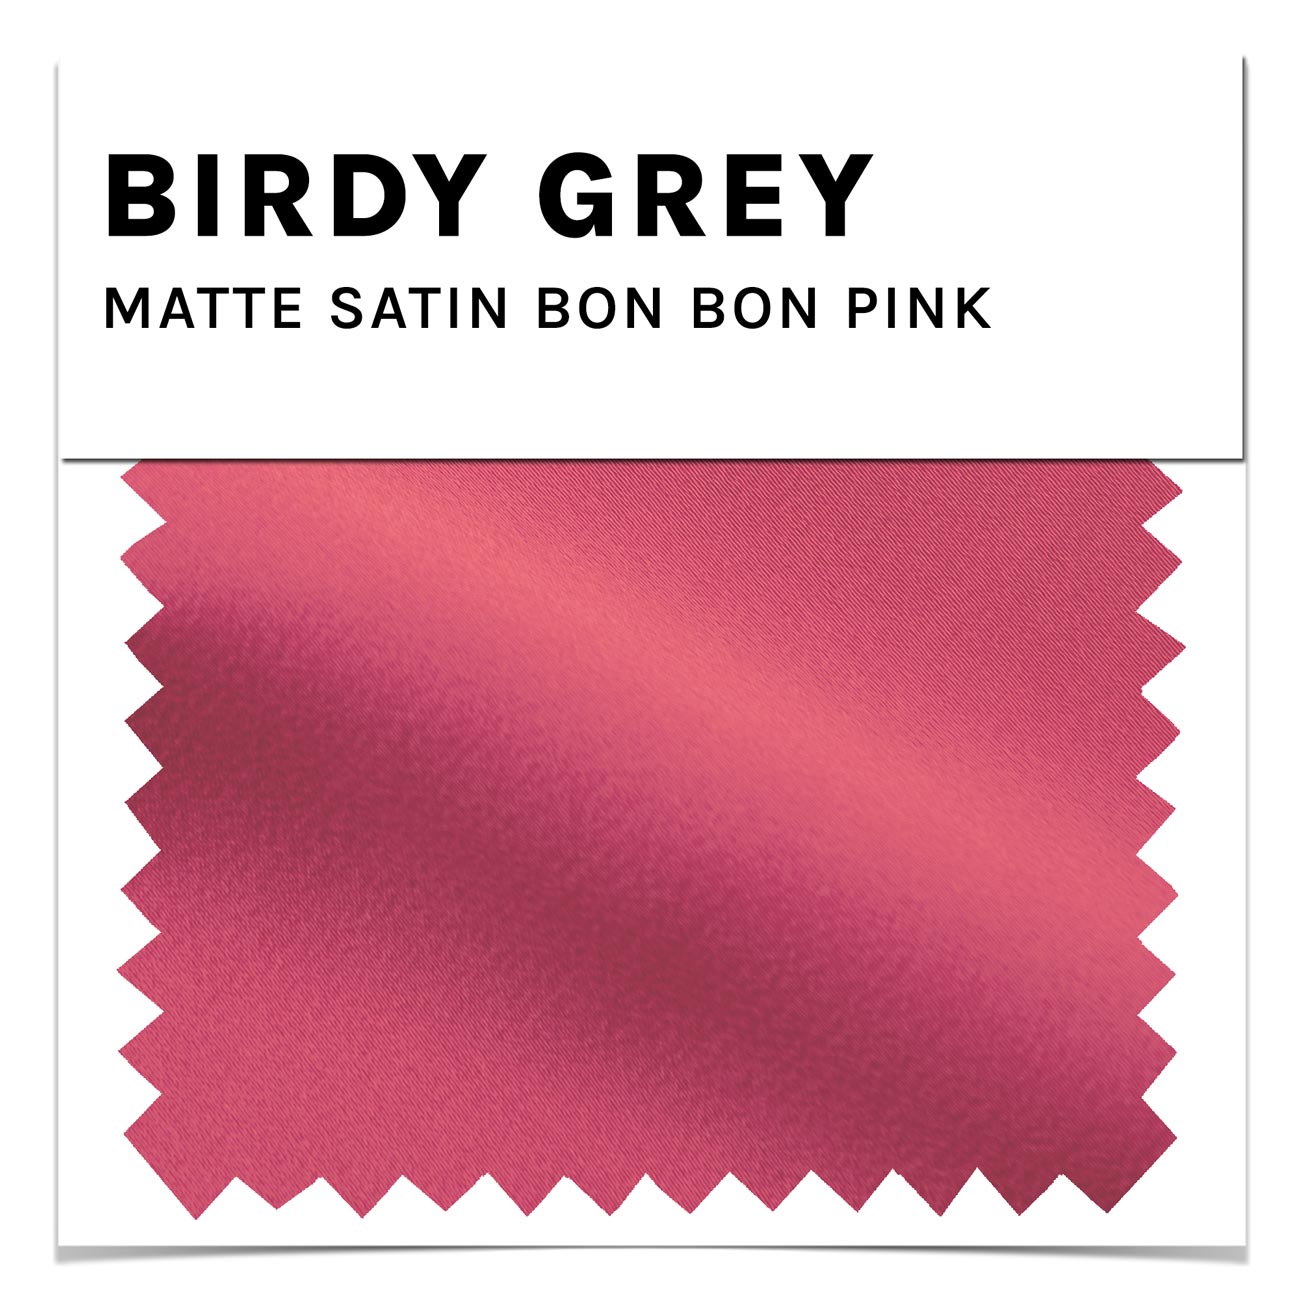 Bon Bon Pink Matte Satin Dress by Birdy Grey